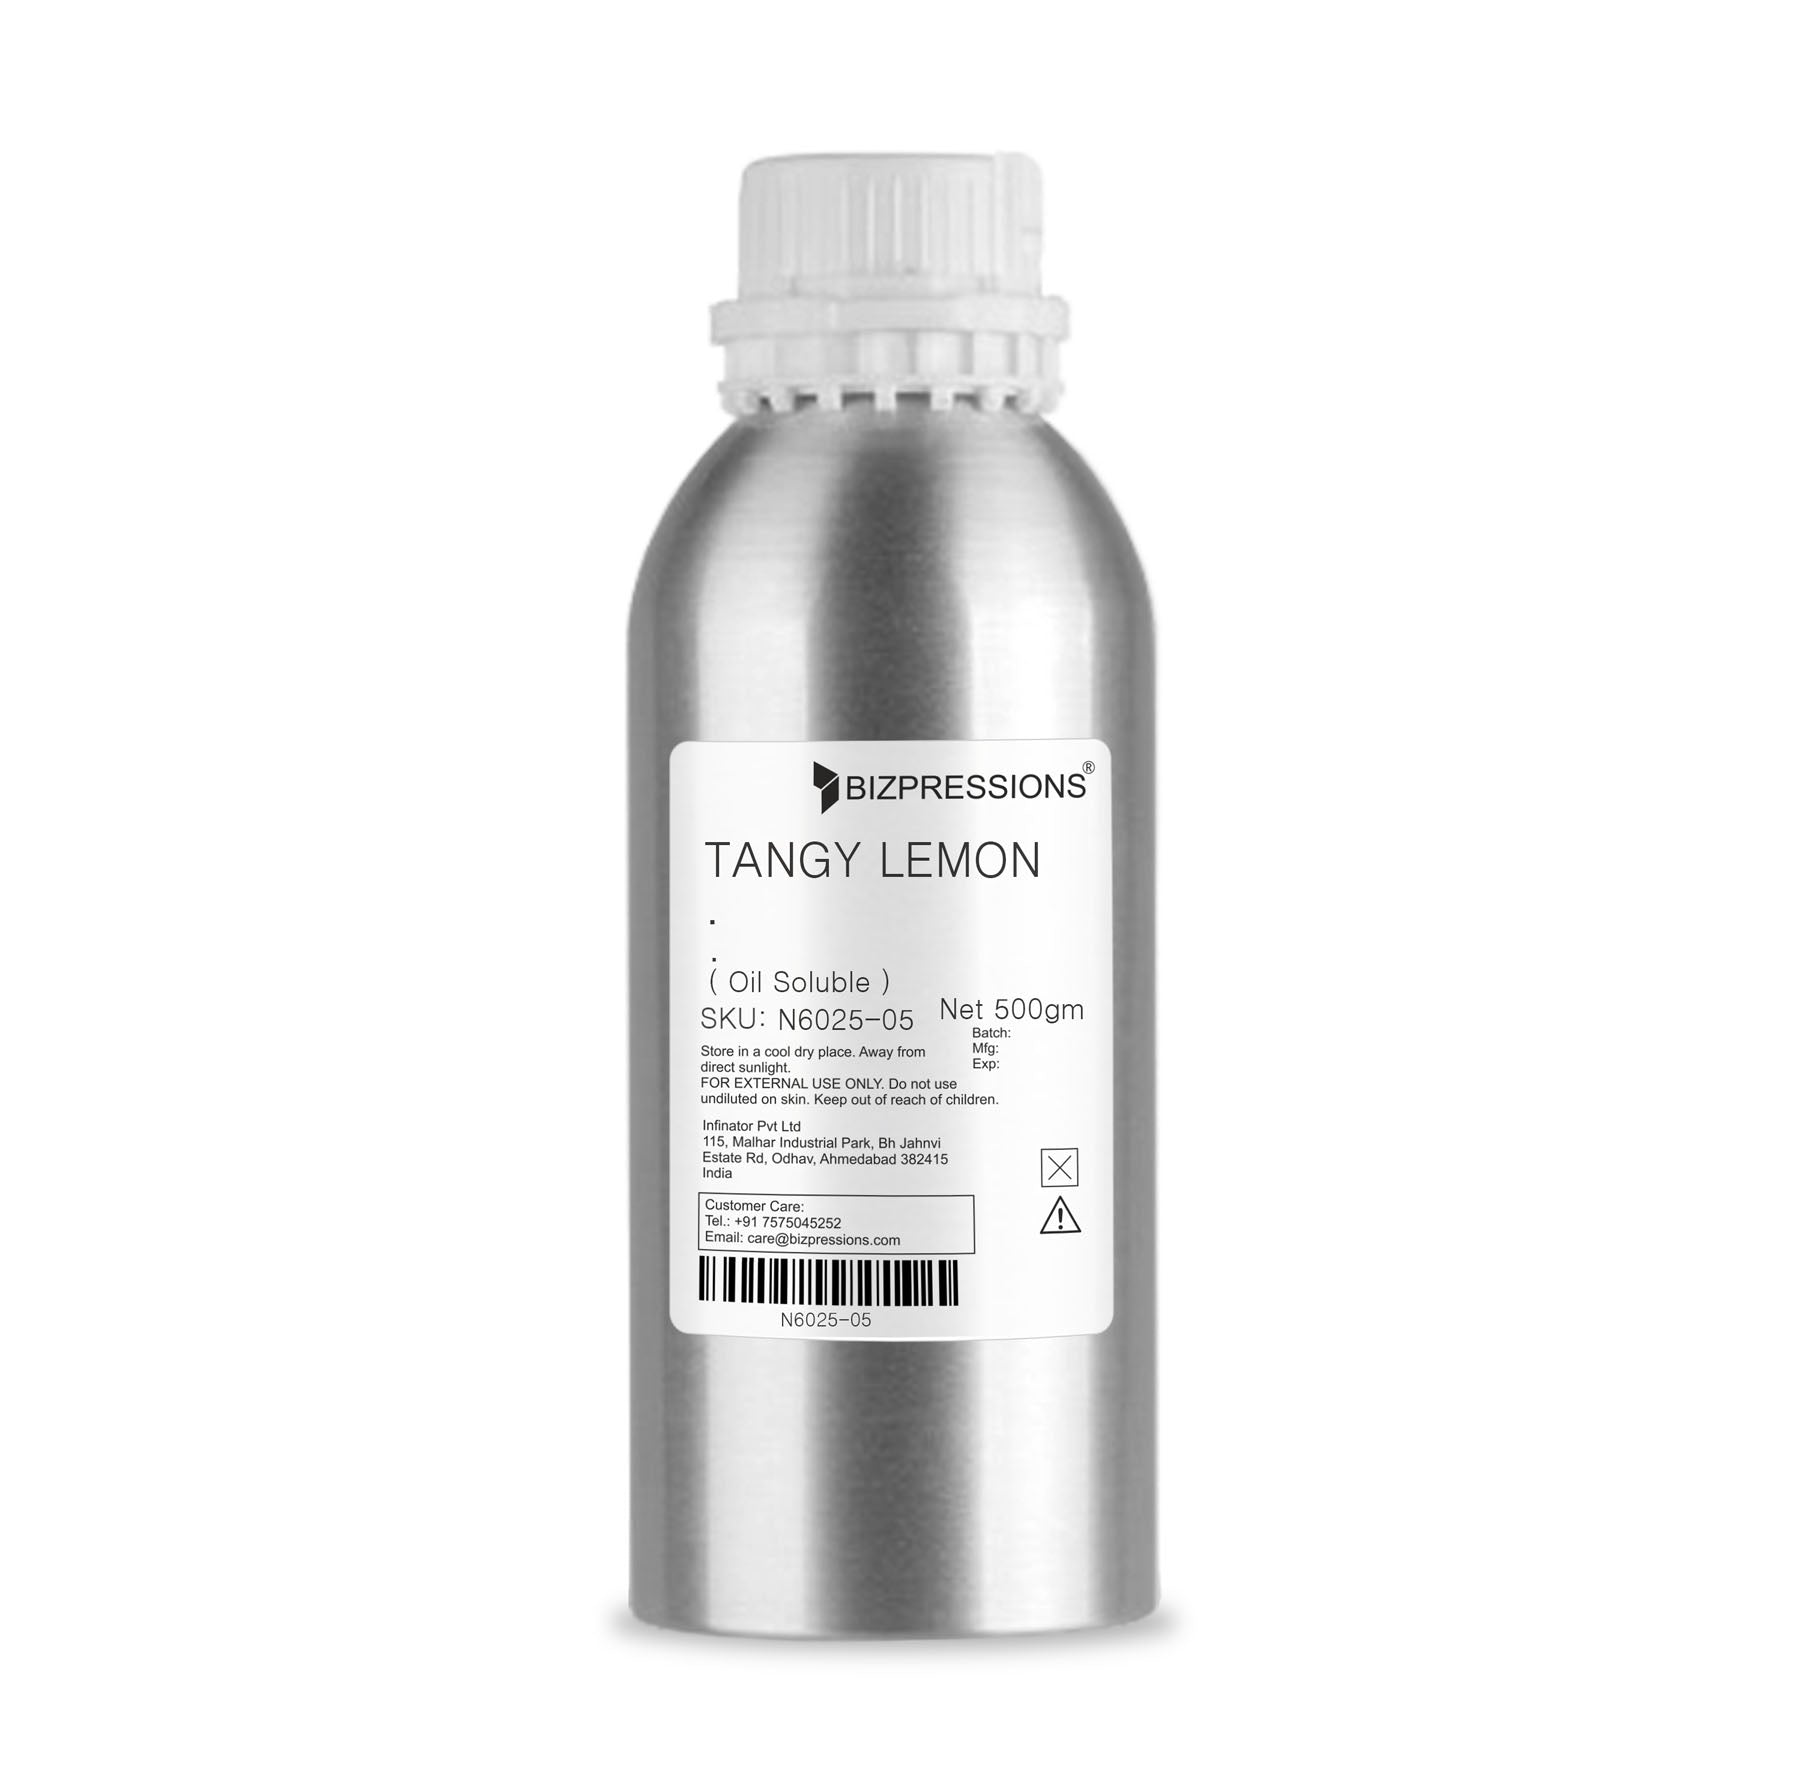 TANGY LEMON - Fragrance ( Oil Soluble ) - 500 gm